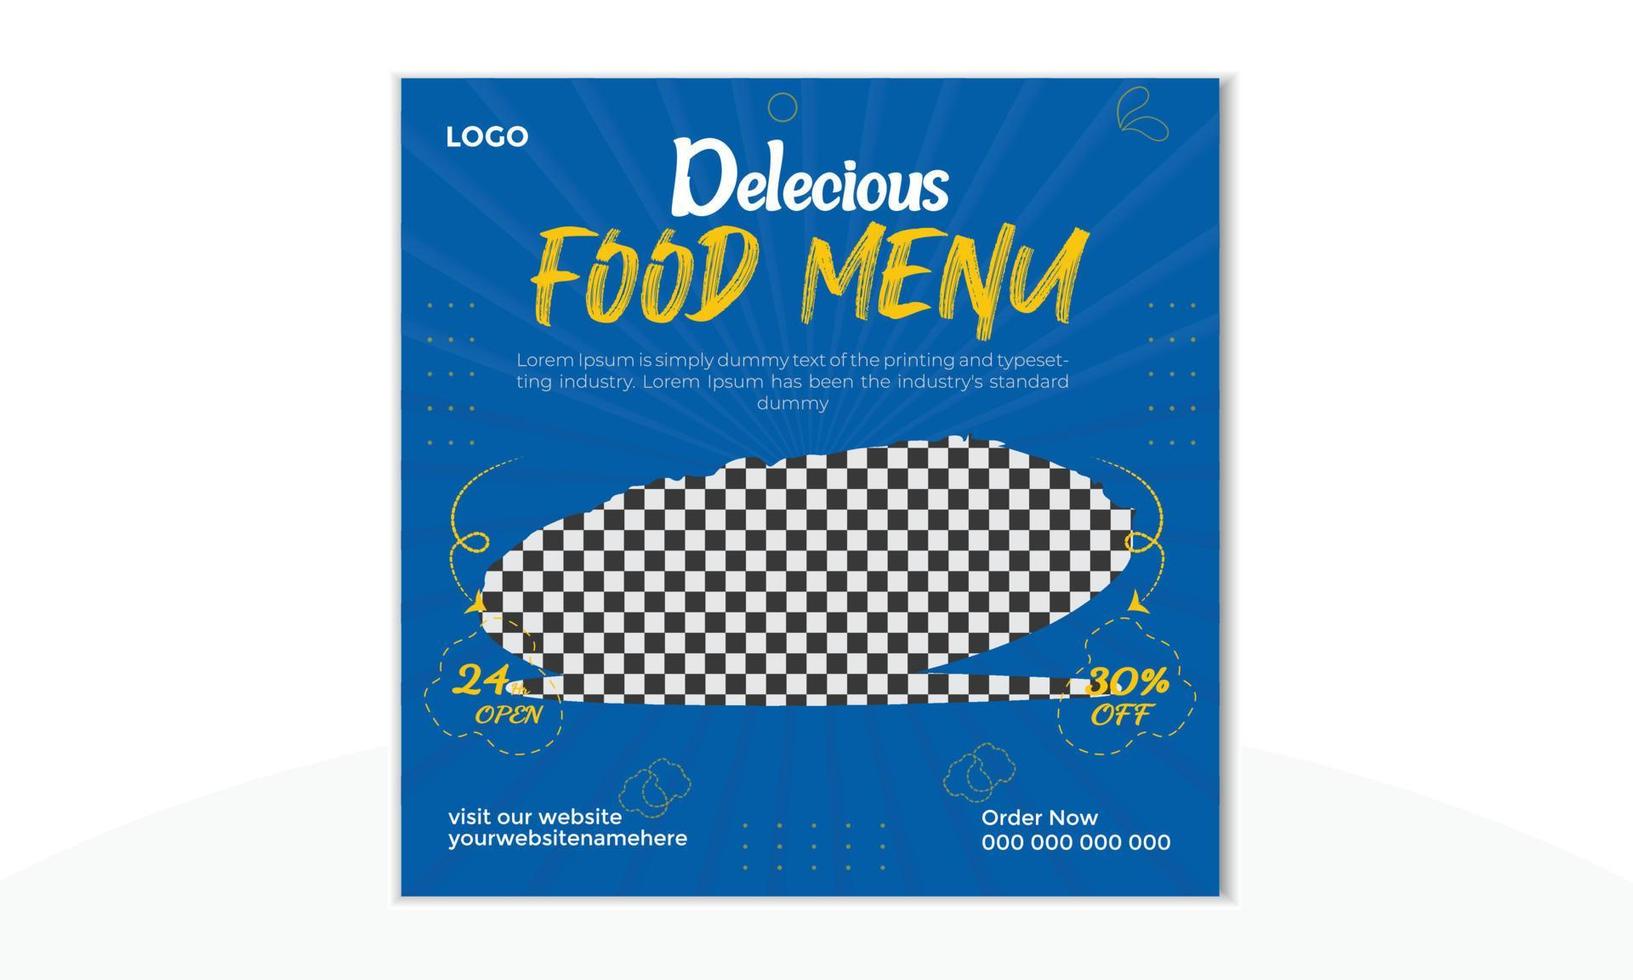 heerlijk eten restaurant menu social media post en verse pizza, hamburger en pasta online verkoop promotie banner. vector